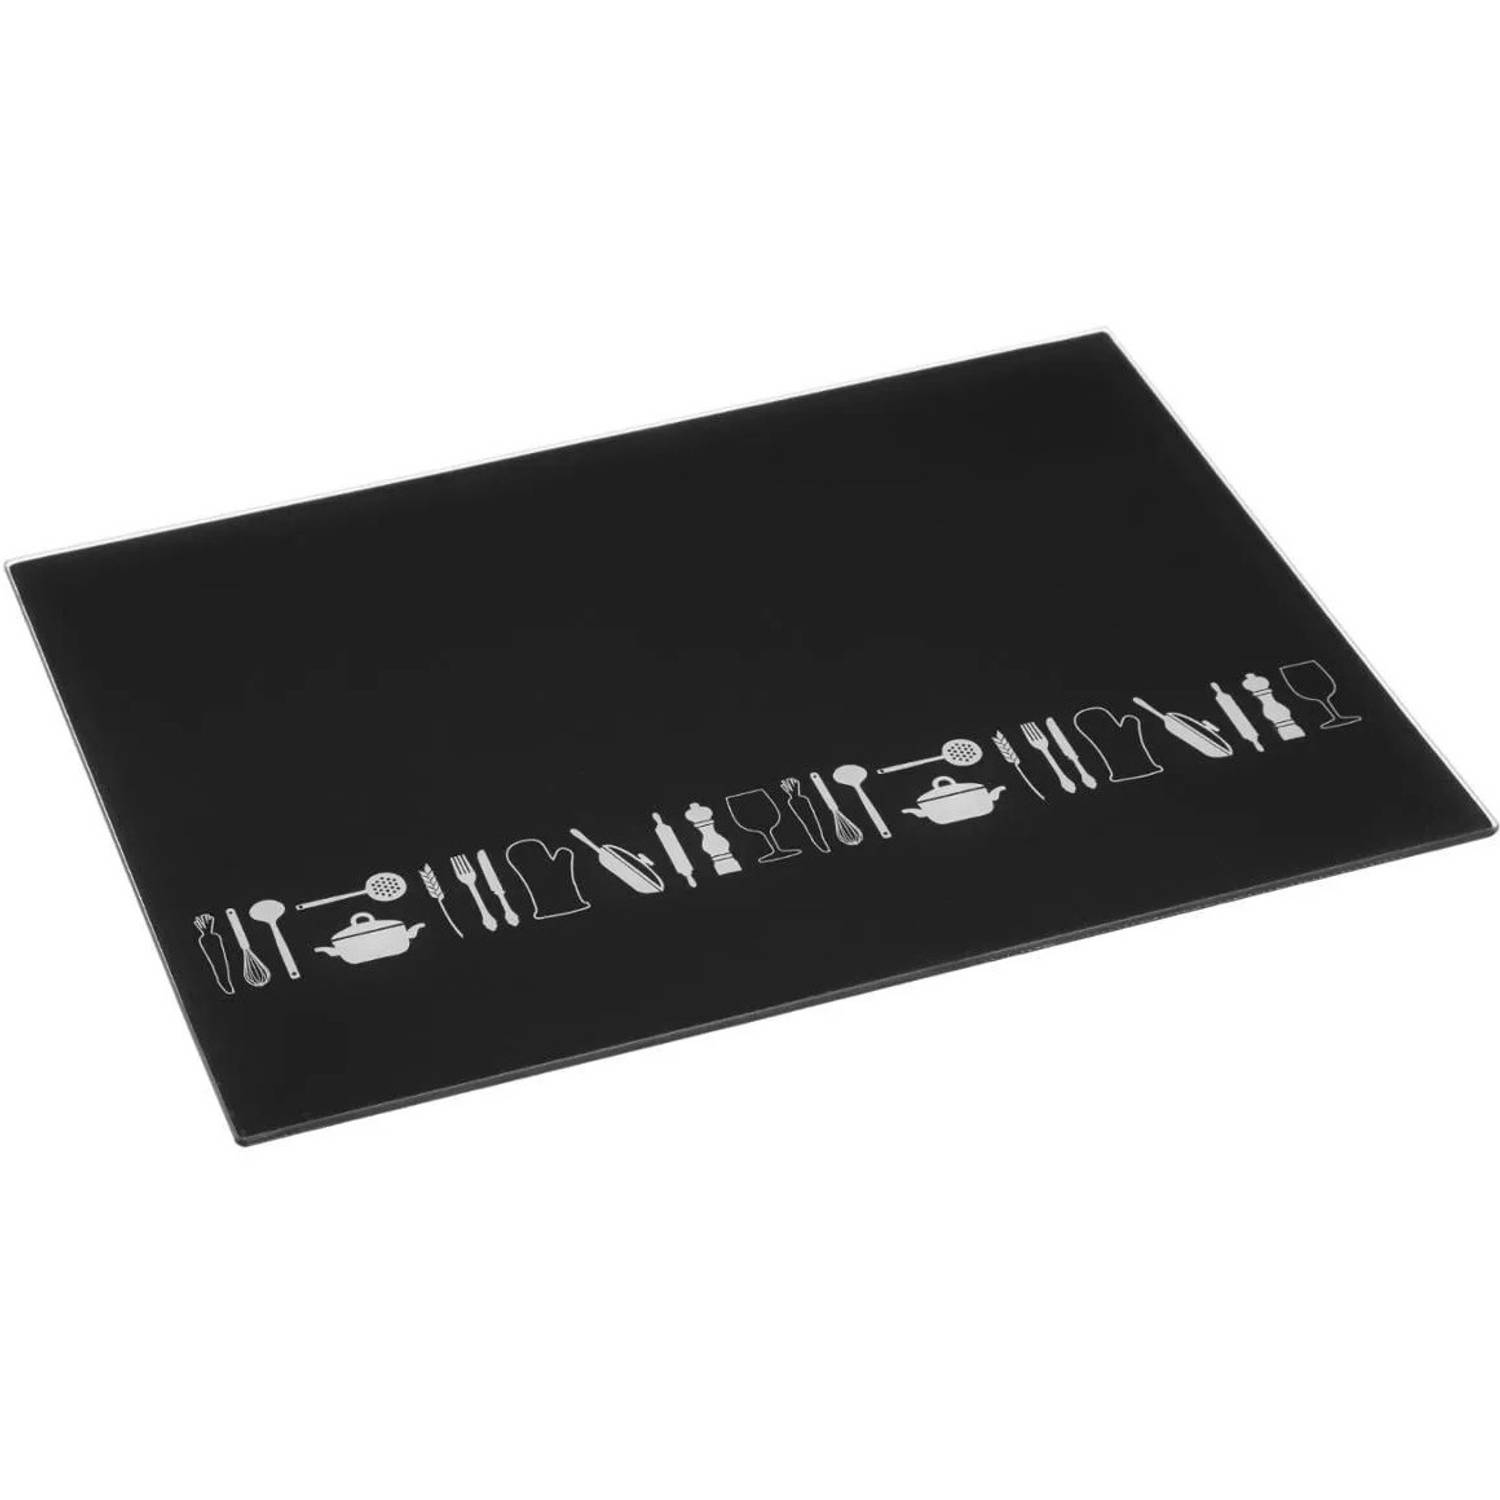 Snijplank rechthoek zwart met print 40 x 30 cm van glas - Serveerplank - Broodplank